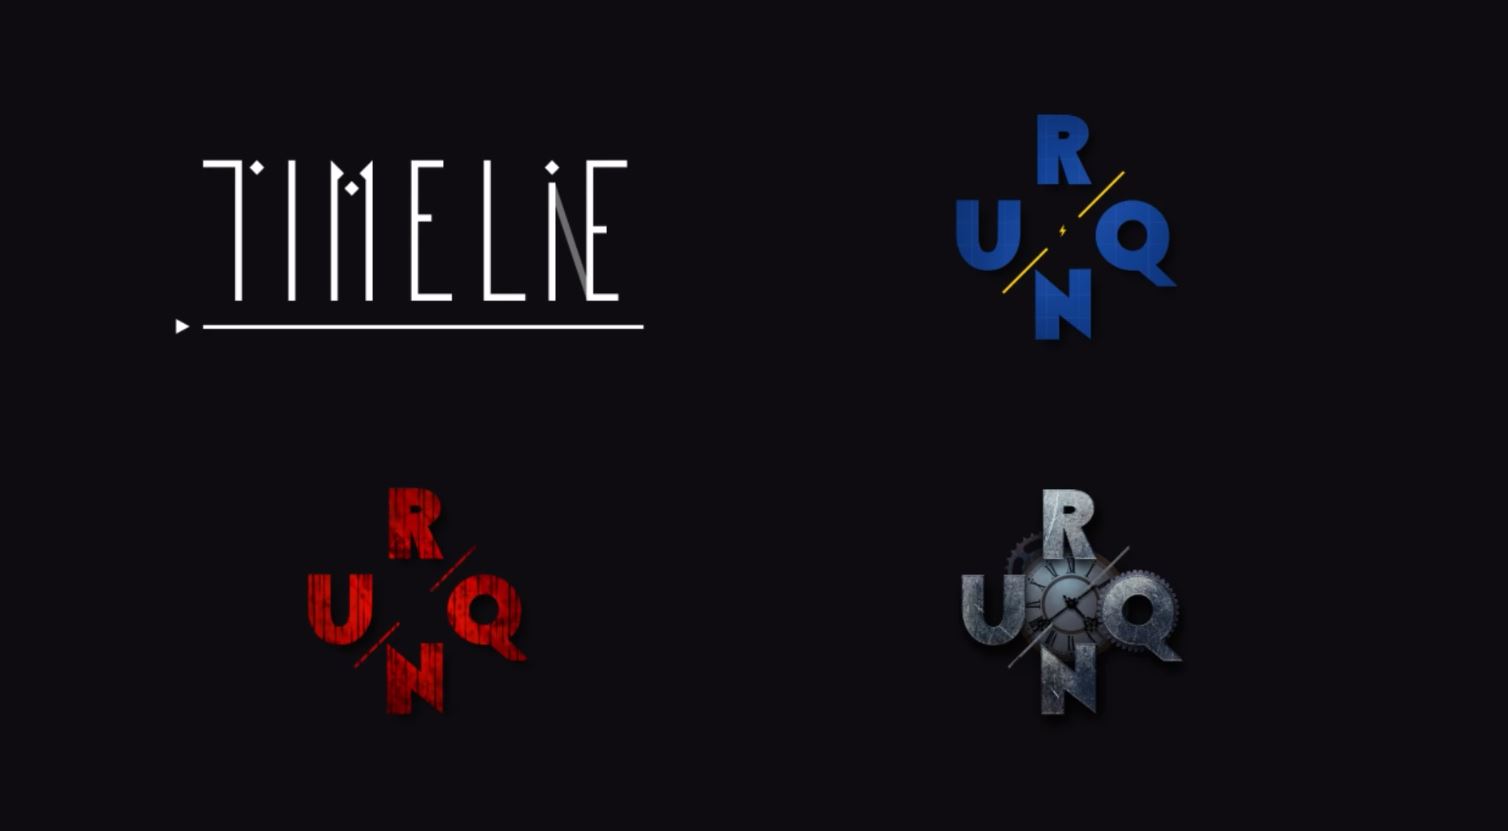 ผู้พัฒนา Timelie ฉลองครบรอบ 1 ปี ด้วยการประกาศเปิดตัว 3 เกมใหม่ในจักรวาล "Urniverse"